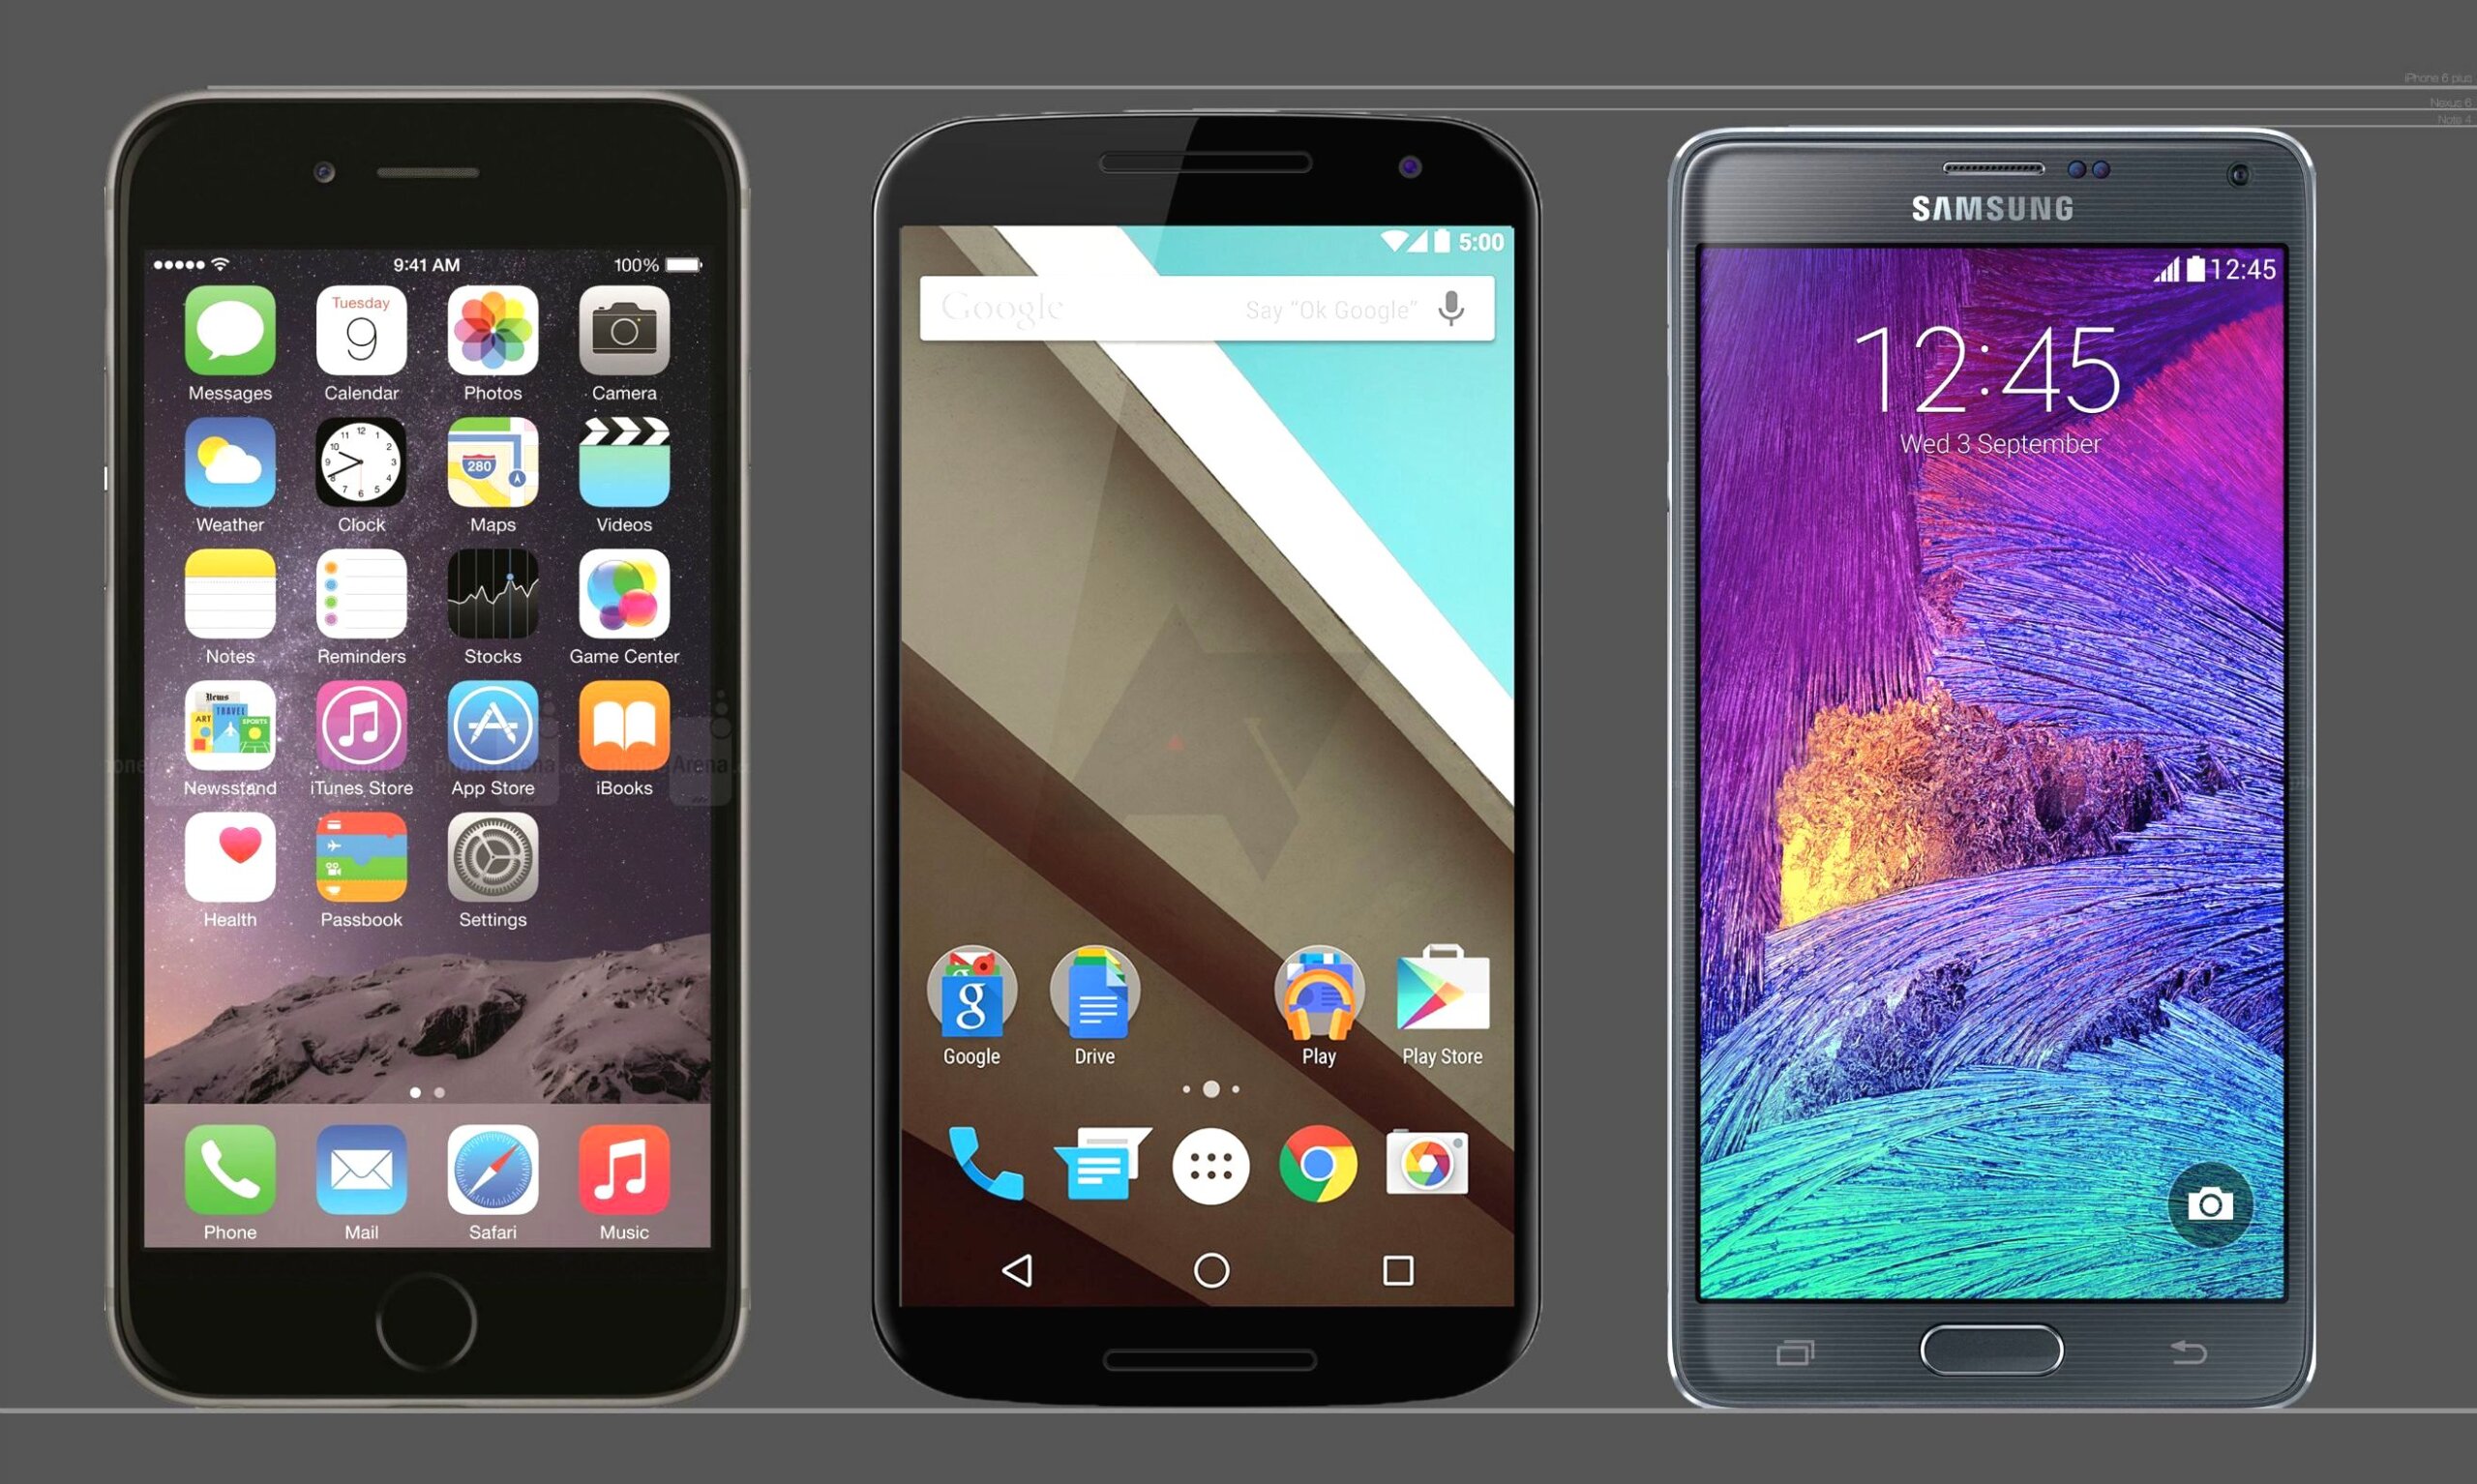 เจ๋งซะ MockUp ของ Nexus 6 แกะสลักจากไม้ จะเป็นอย่างไรเมื่อมาเทียบกับ Nexus 4 และ 7